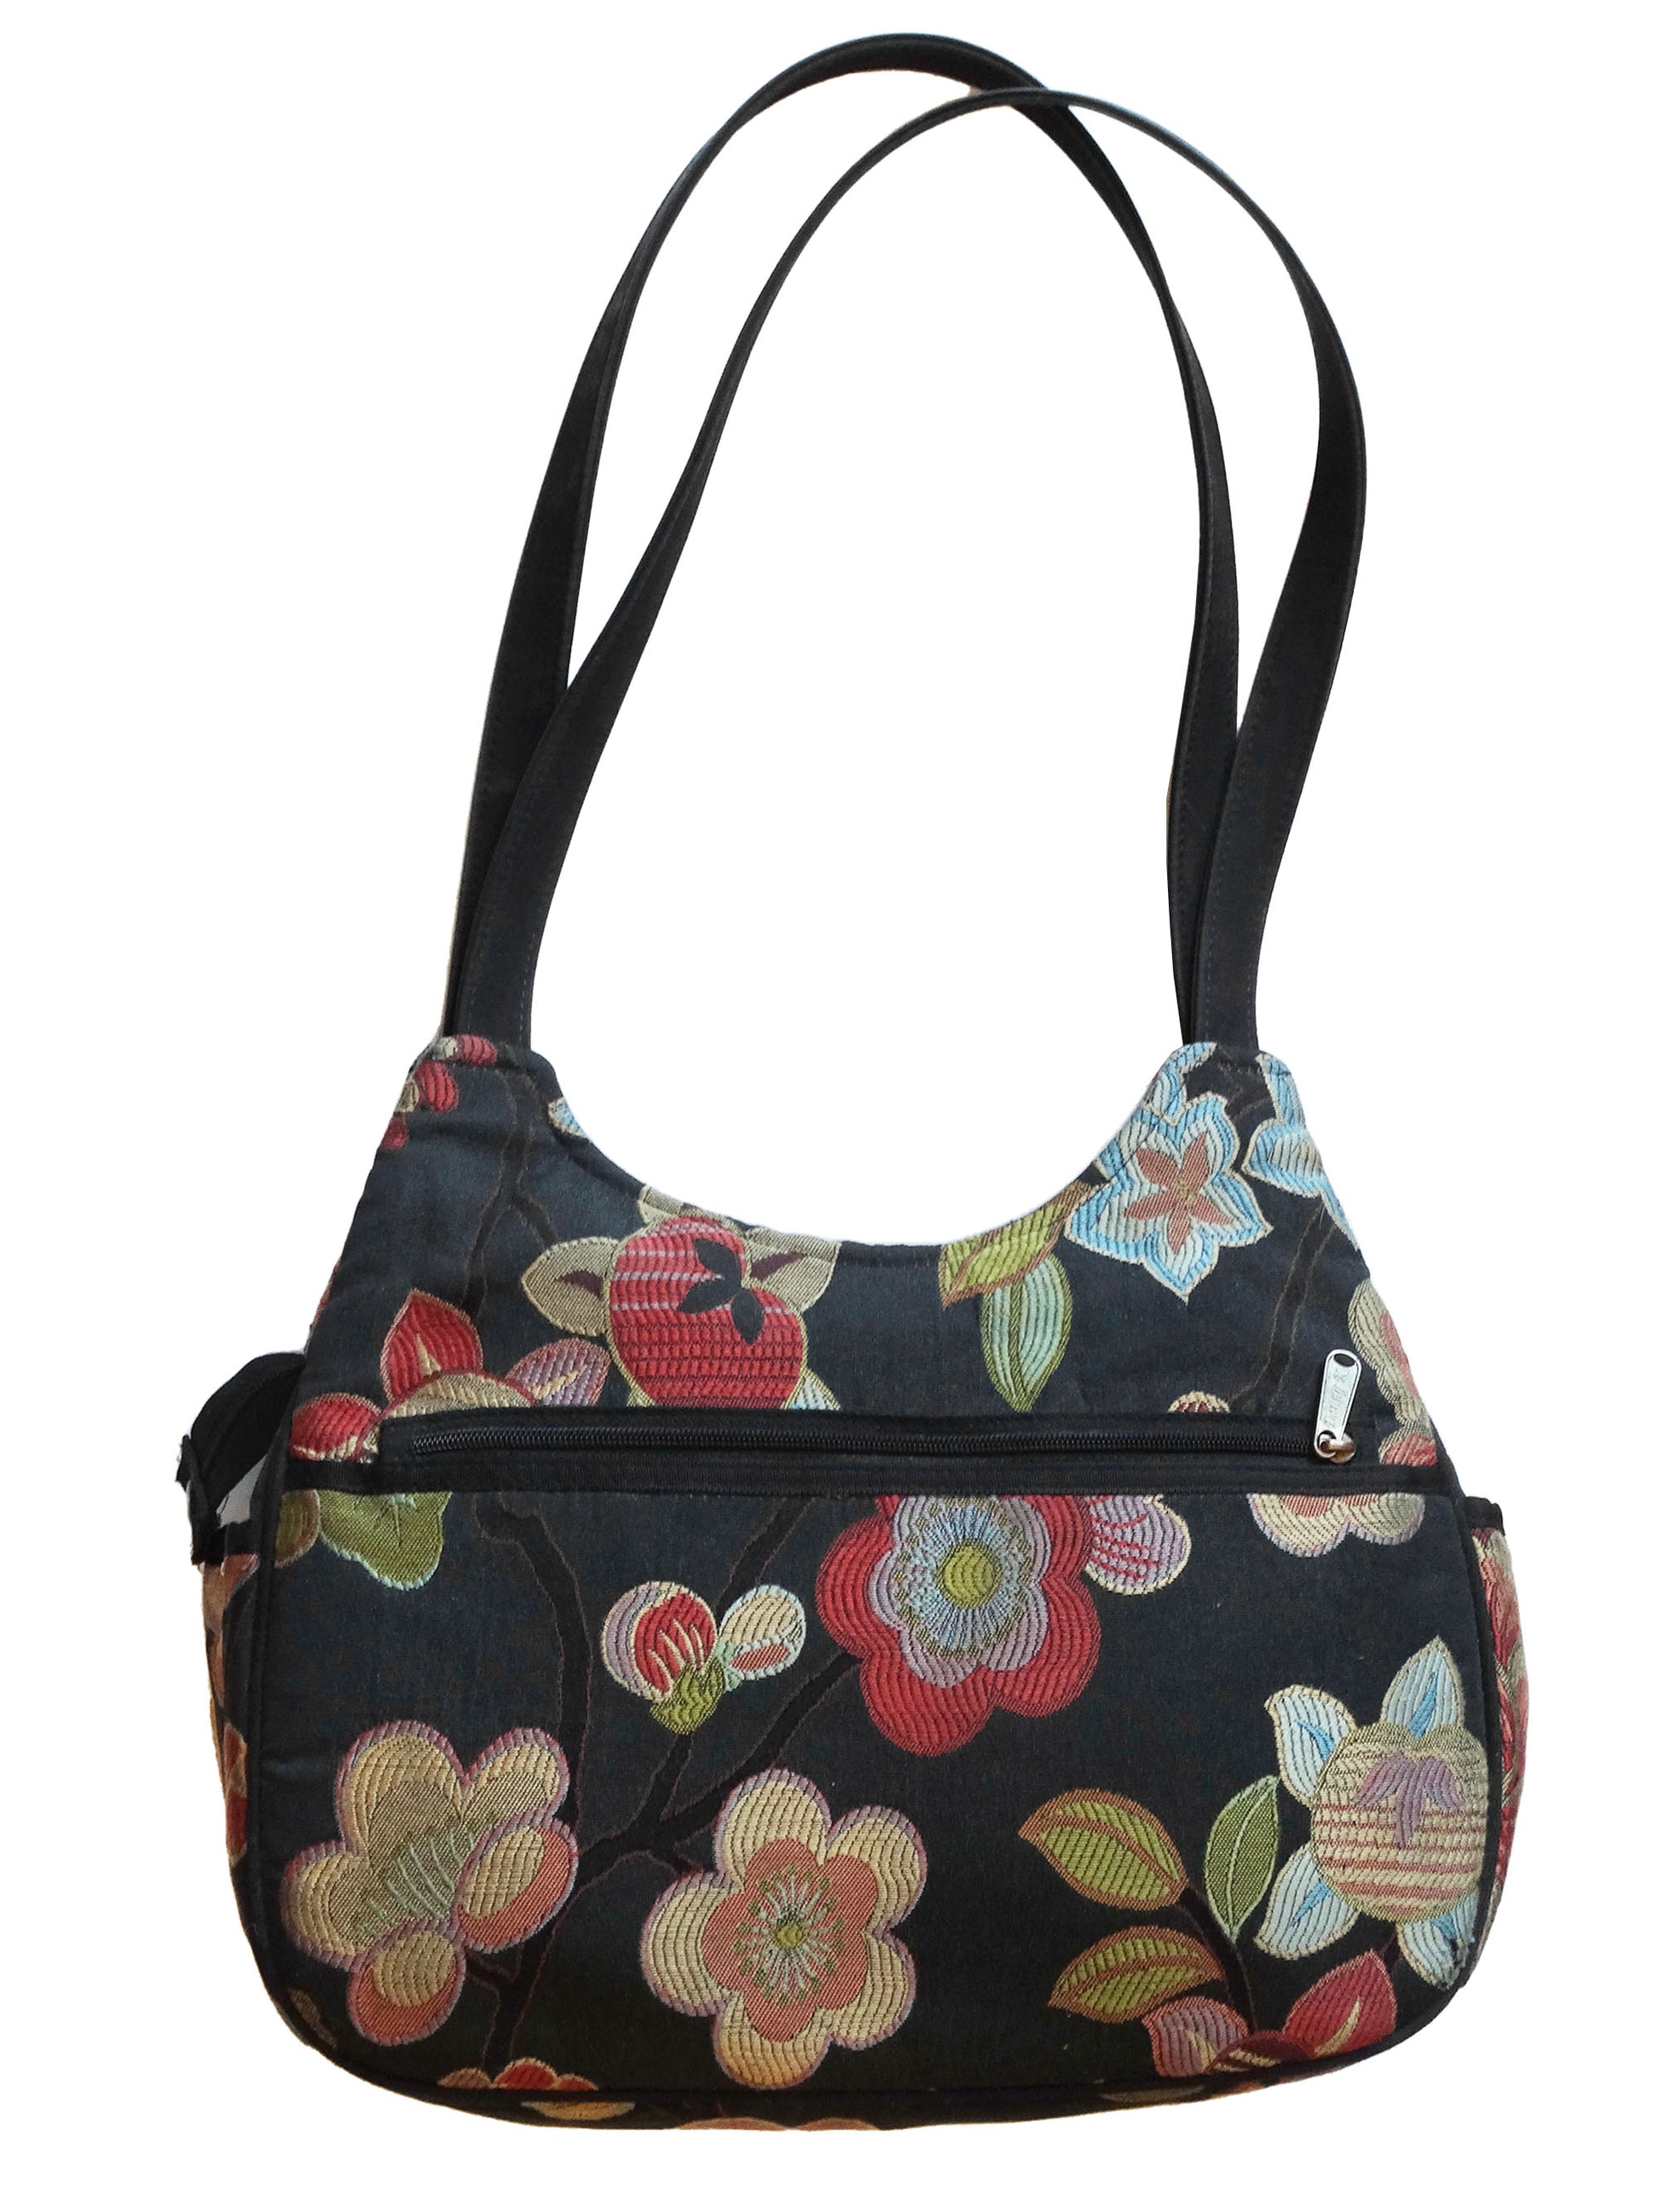 Danny-K-Beverly-Hills-Floral-Tapestry-Bag.-Full-view.-Shop-eBargainsAndDeals.com